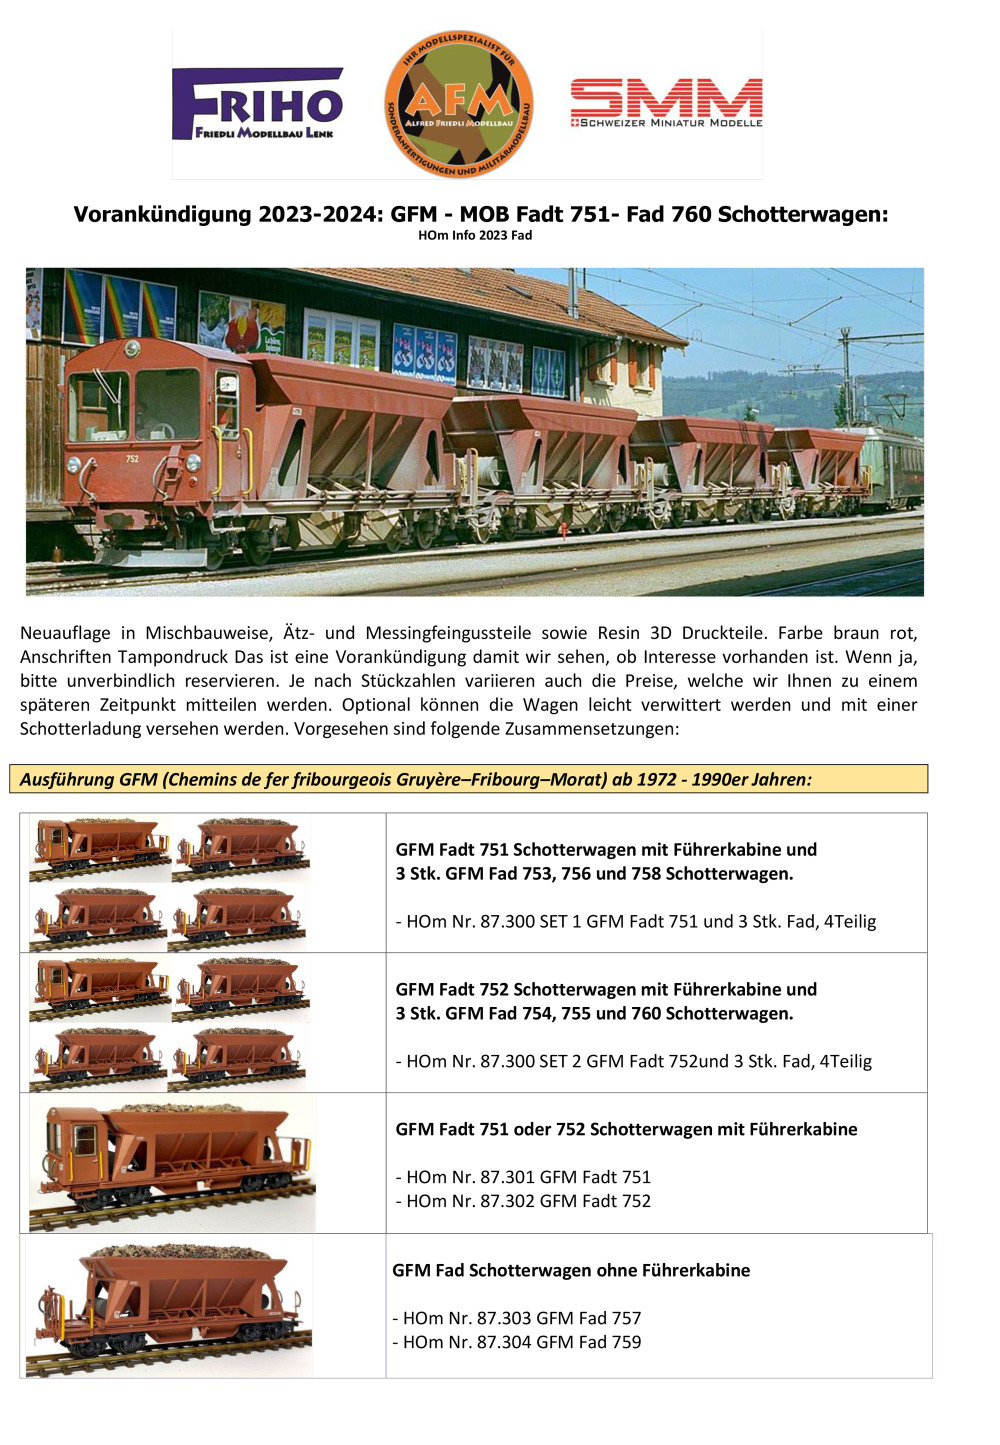 FRIHO - GFM & MOB: Fad(t) freight wagons